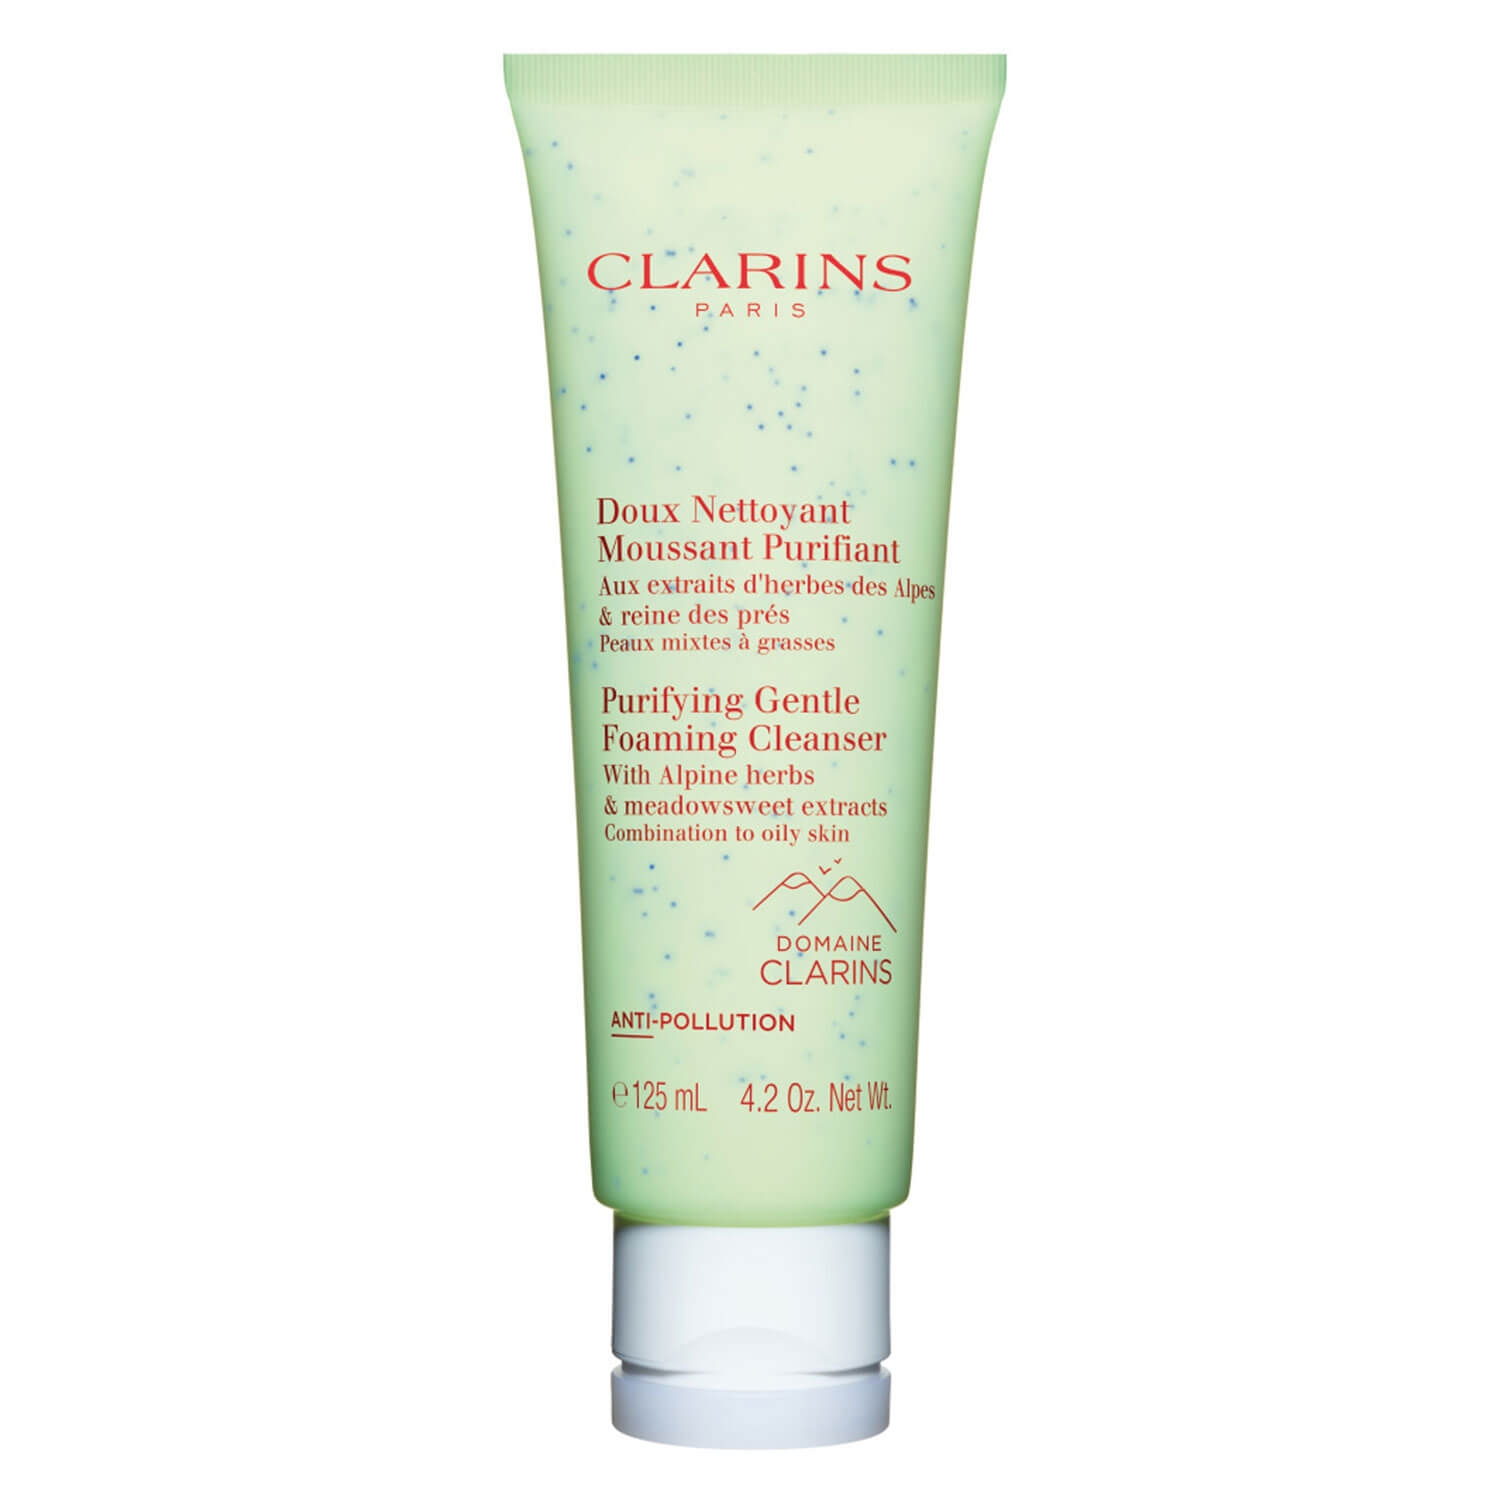 Produktbild von Clarins Cleansers - Doux Nettoyant Moussant Purifiant